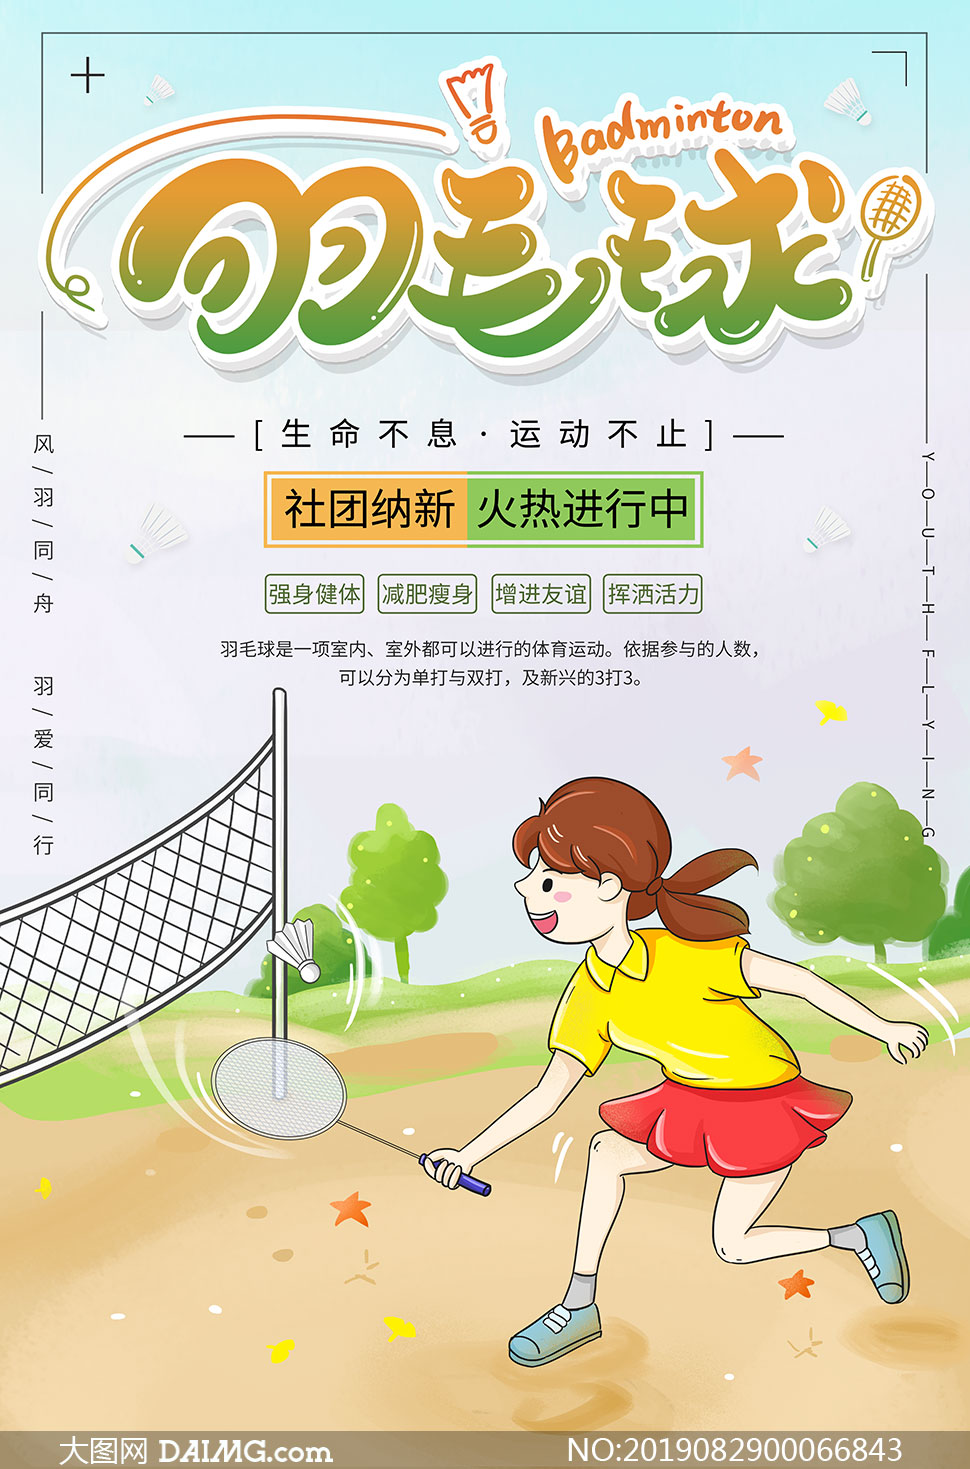 羽毛球俱乐部招新海报设计psd素材